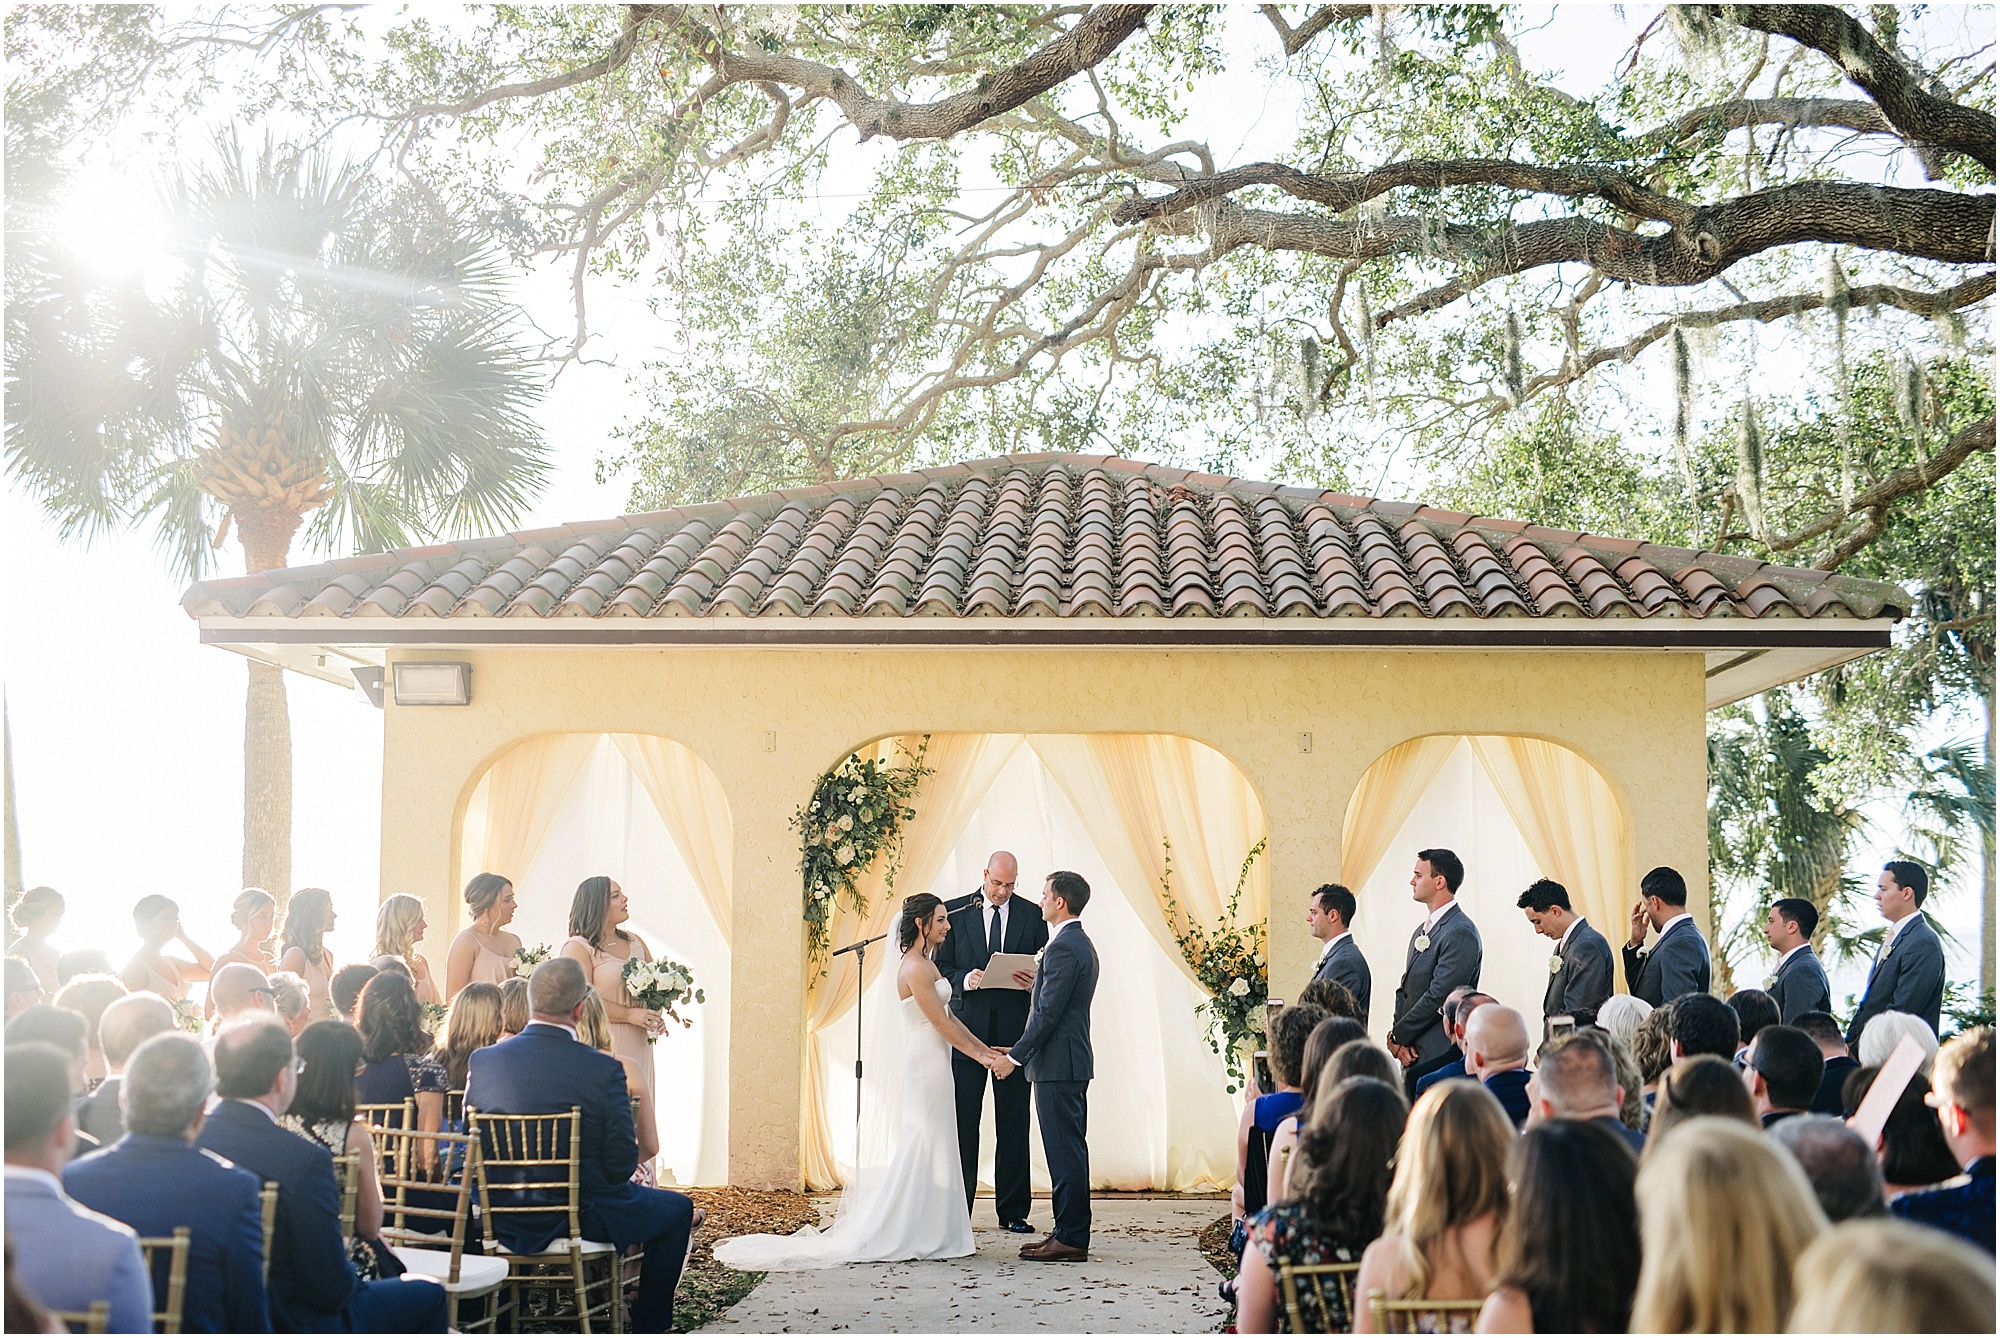 Wedding ceremony at Powel Crosley Estate in Sarasota 